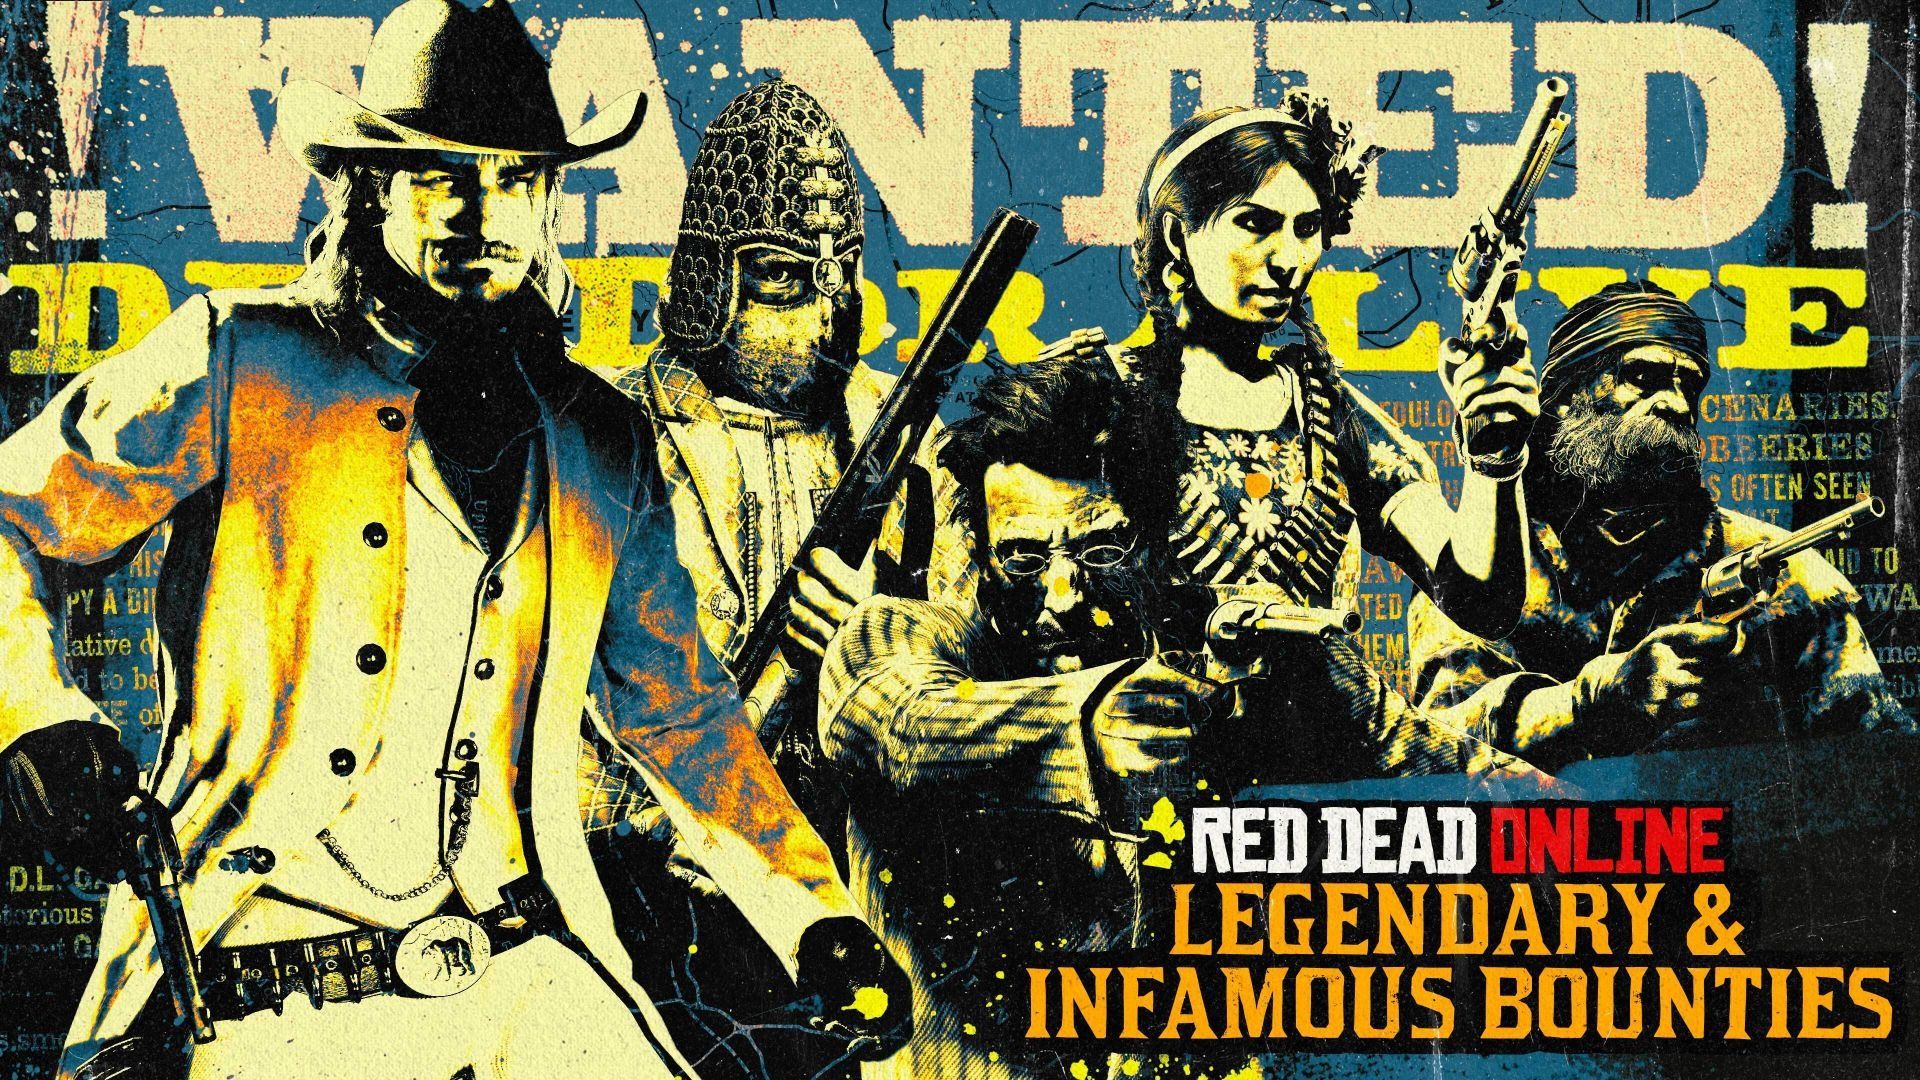 Livrez les criminels à la justice dans Red Dead Online - Rockstar Games